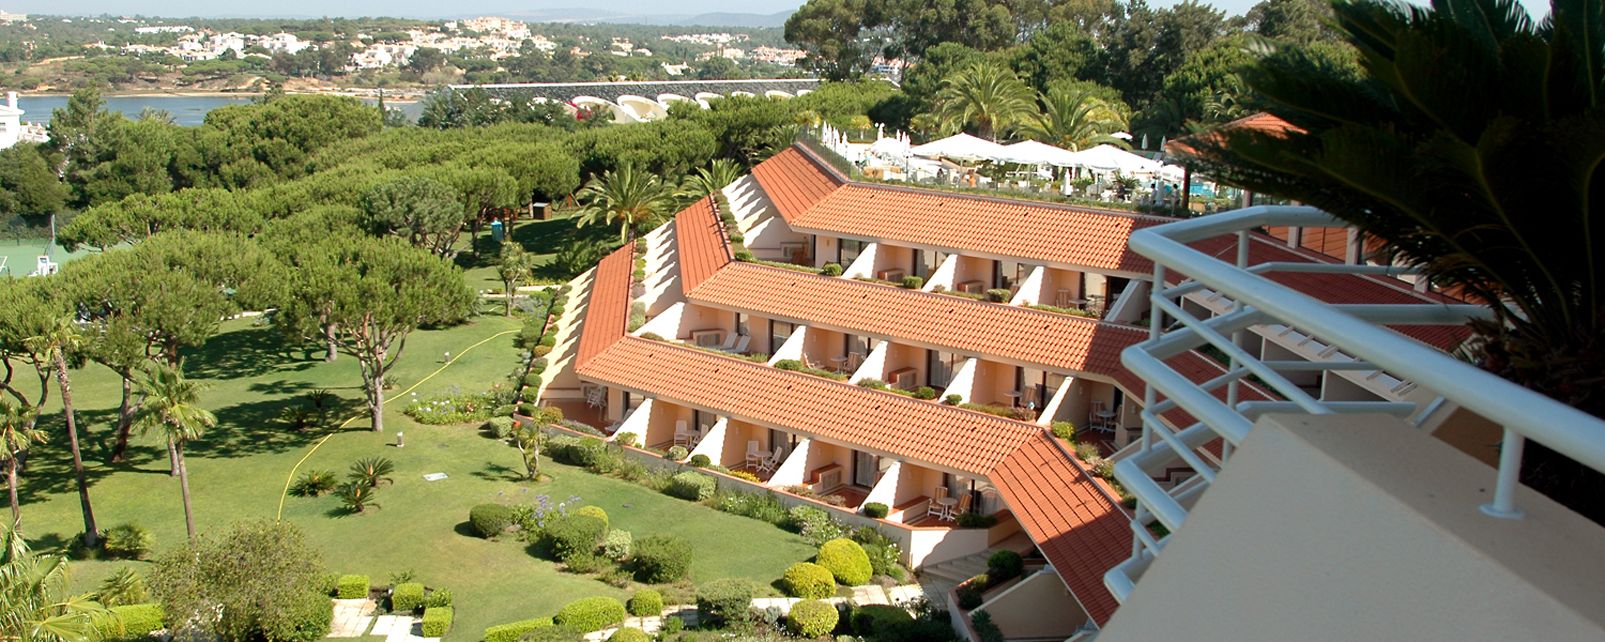 Hôtel Quinta do Lago